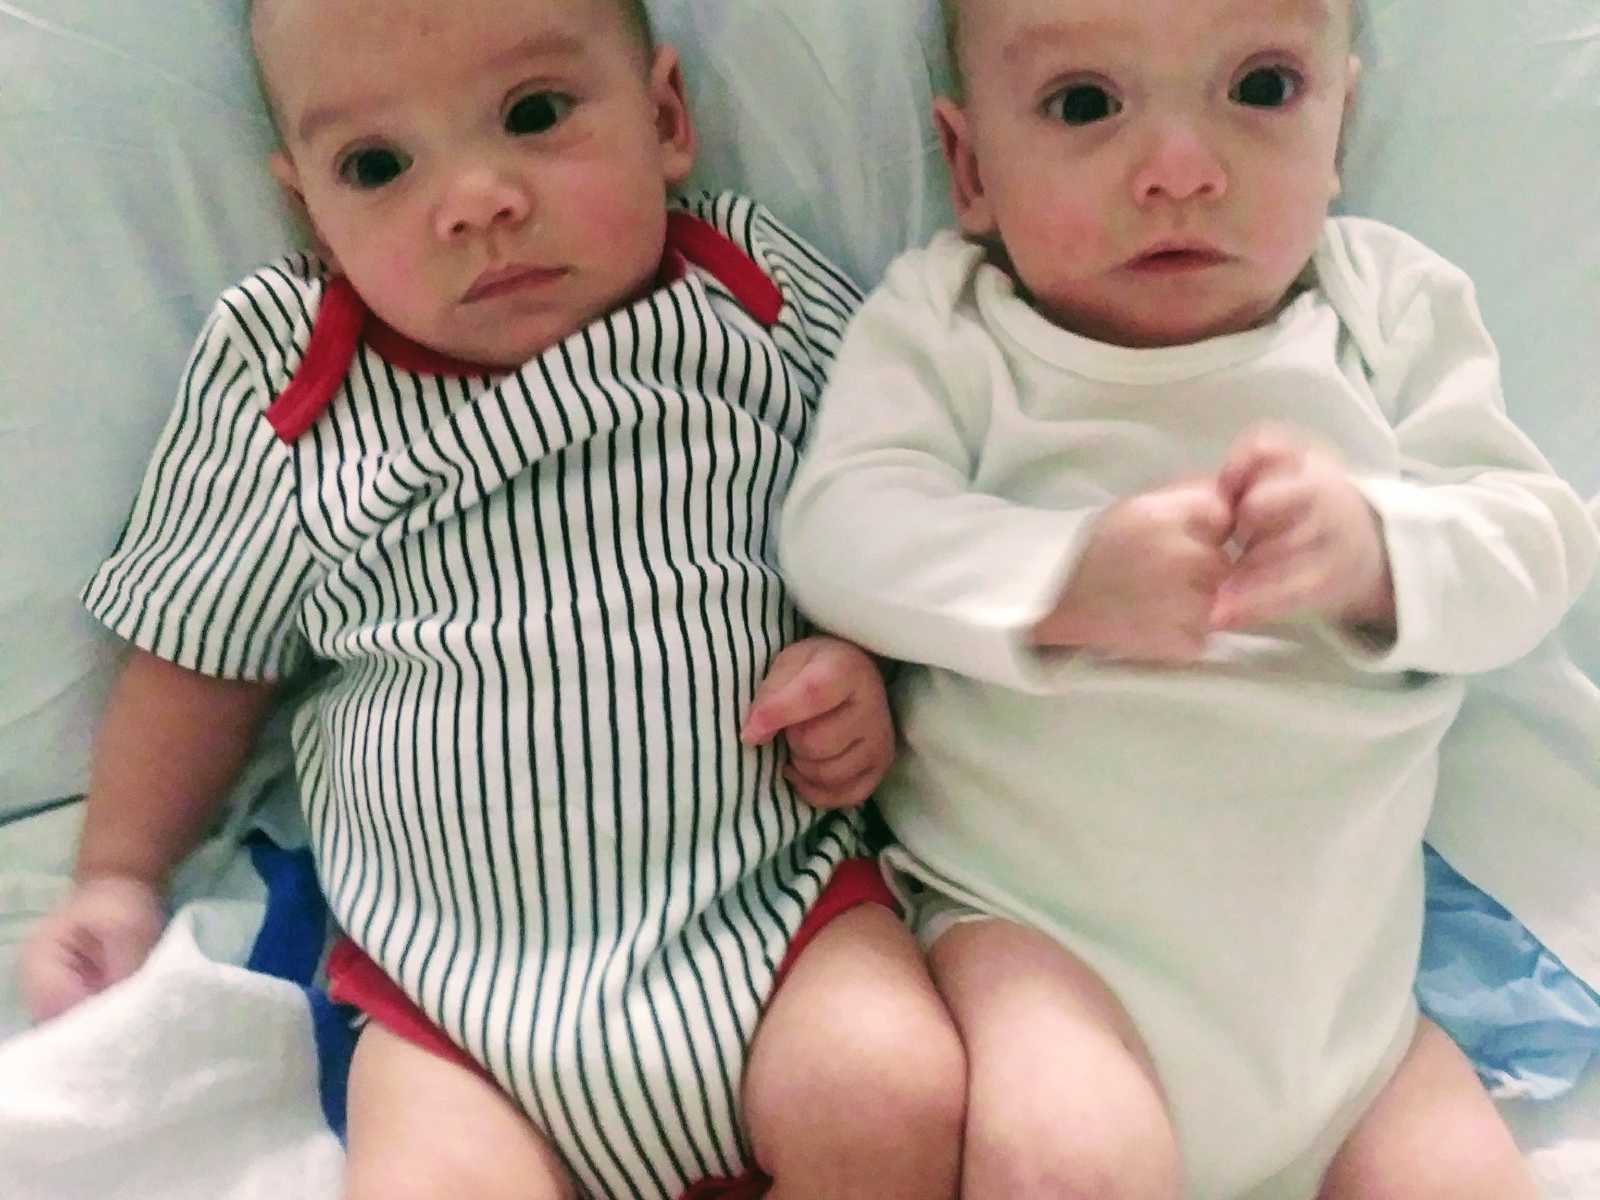 Zwillinge benötigen eine wichtige OP, um zu überleben – da überrascht ihr 4-jähriger Bruder Eltern und Ärzte gleichermaßen